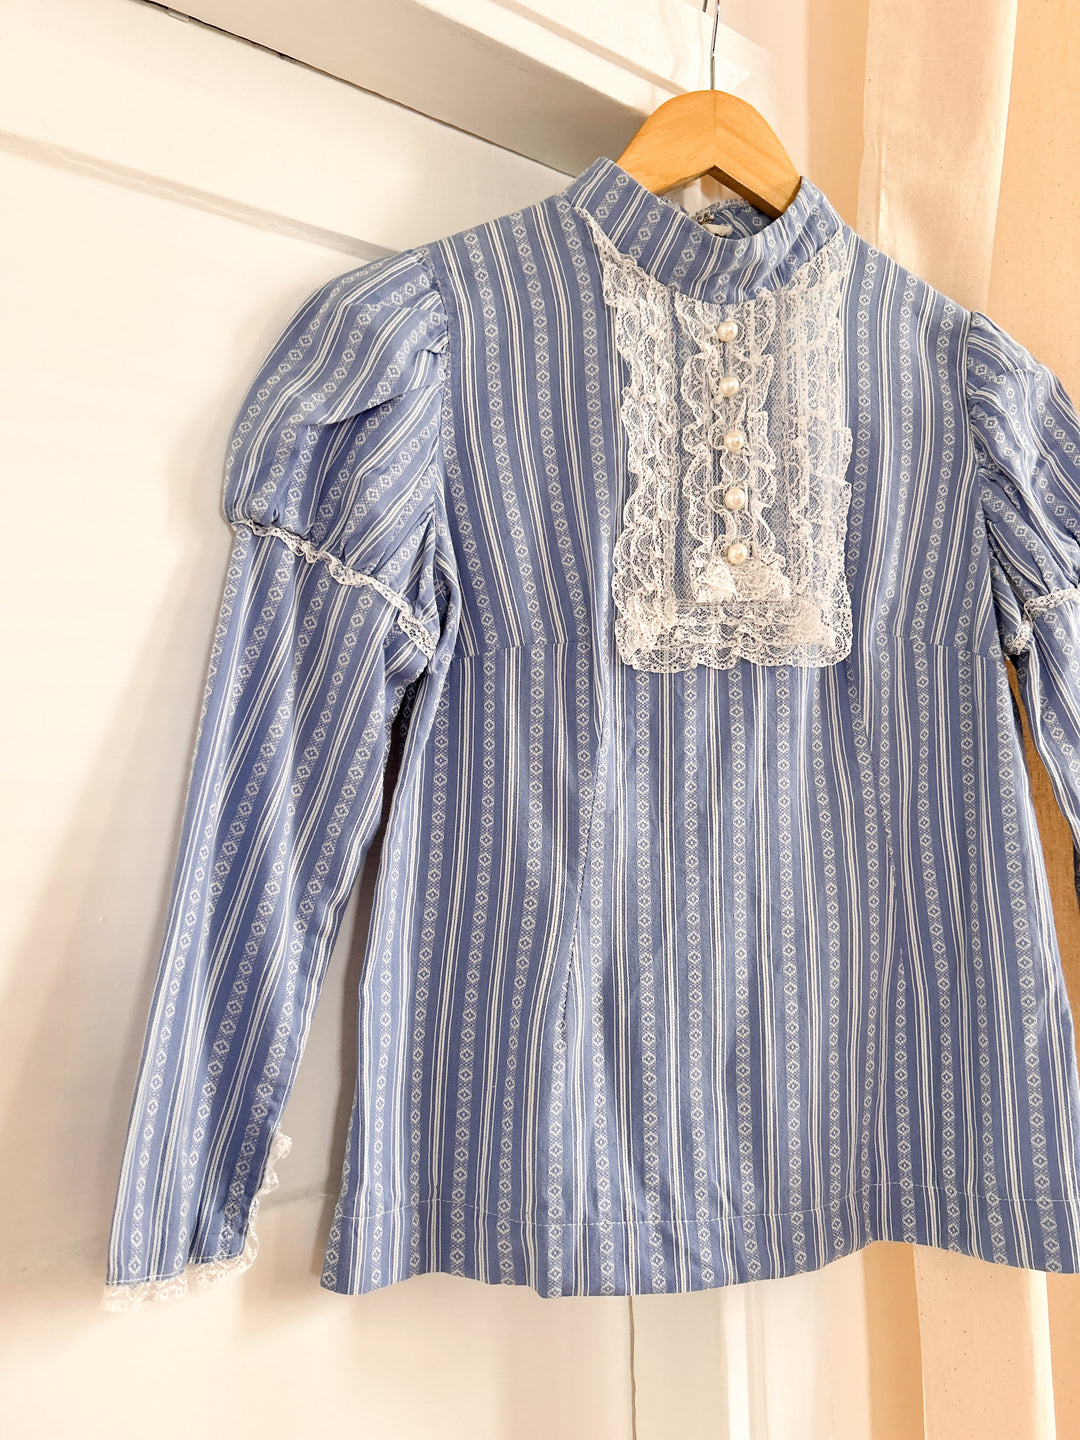 Mattie theatre made cotton victoriana blouse